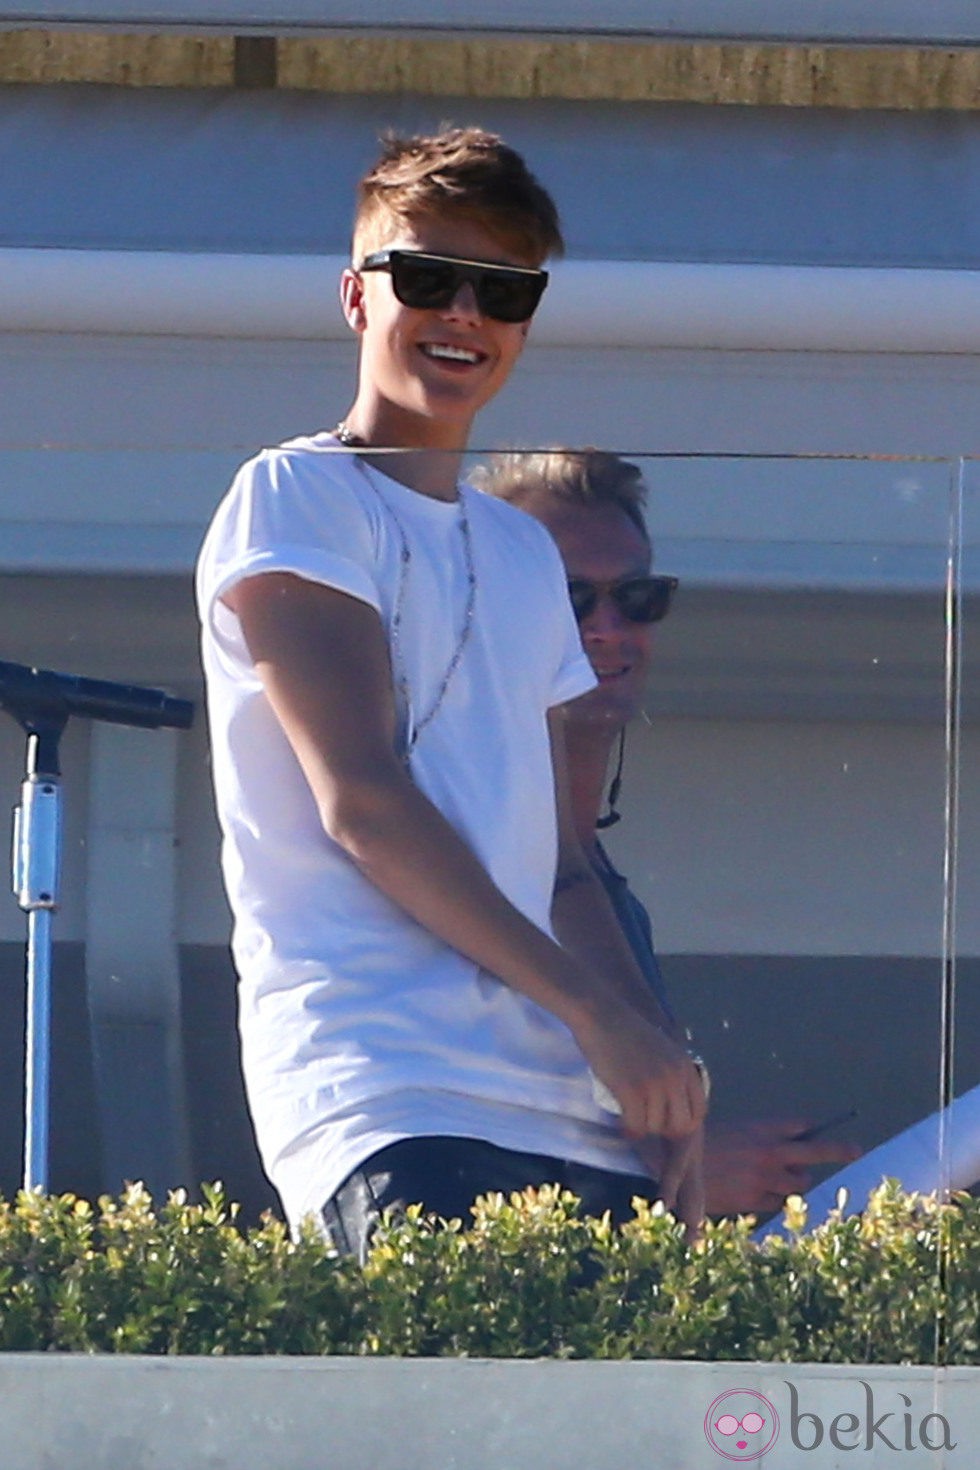 Justin Bieber sonríe a los fotógrafos durante una grabación para el programa 'X Factor' EE.UU